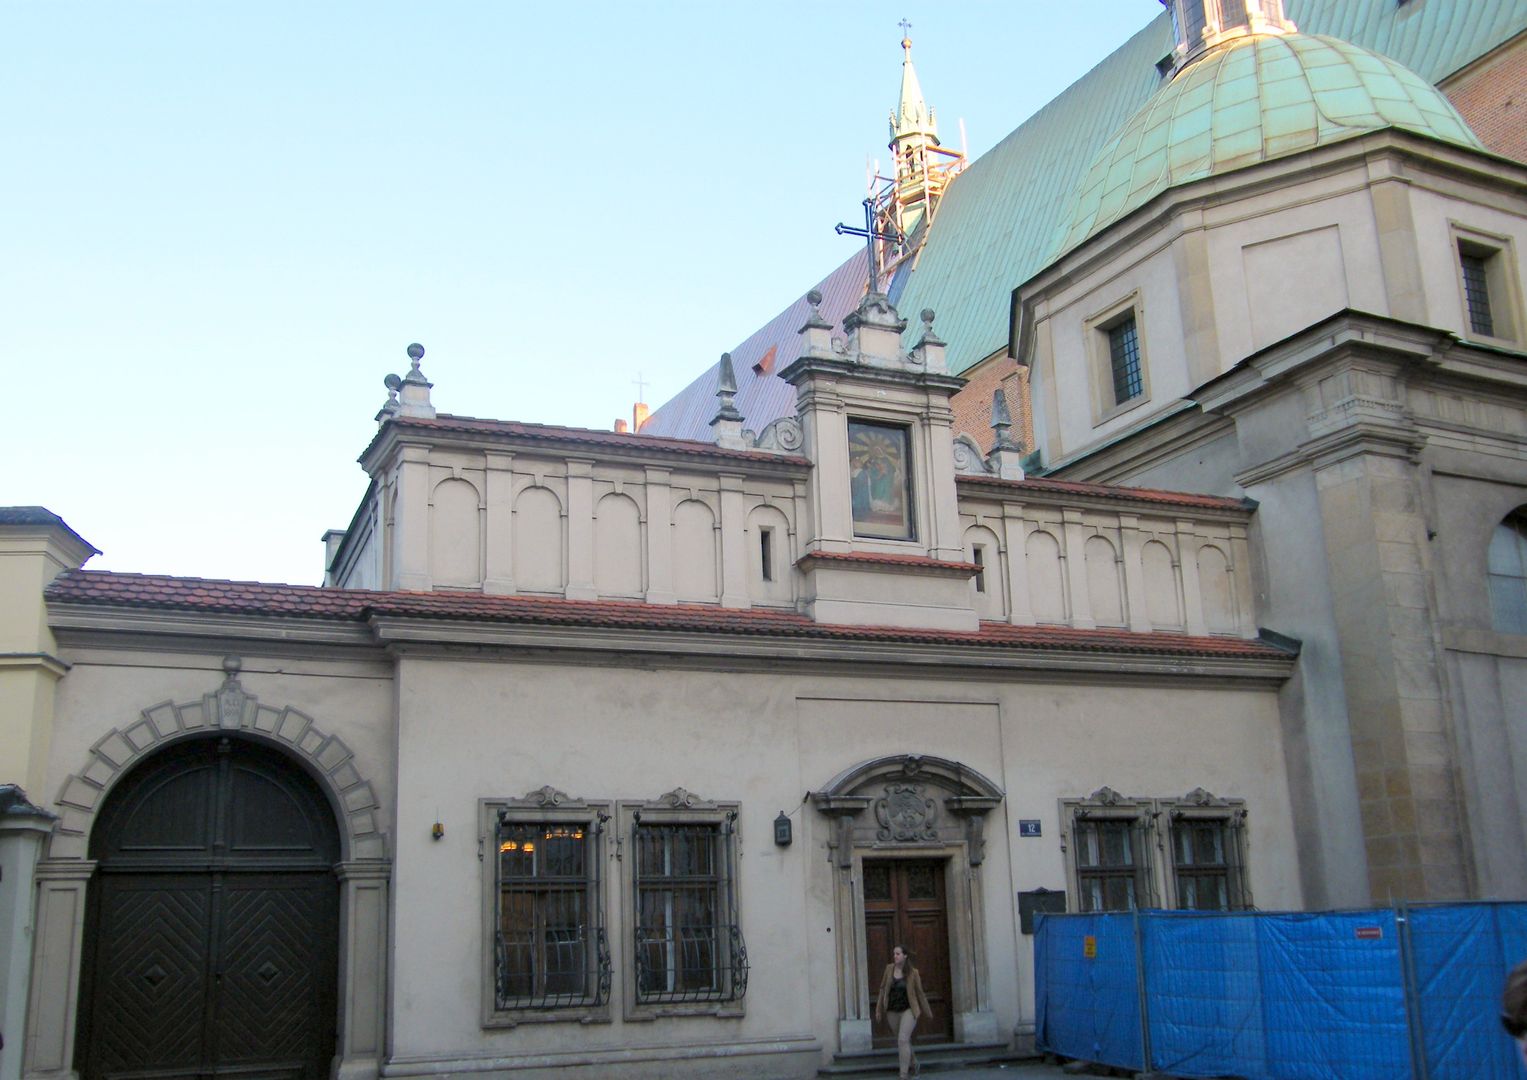 Niezwykłe odkrycie w krakowskim klasztorze. Tego jeszcze nie było